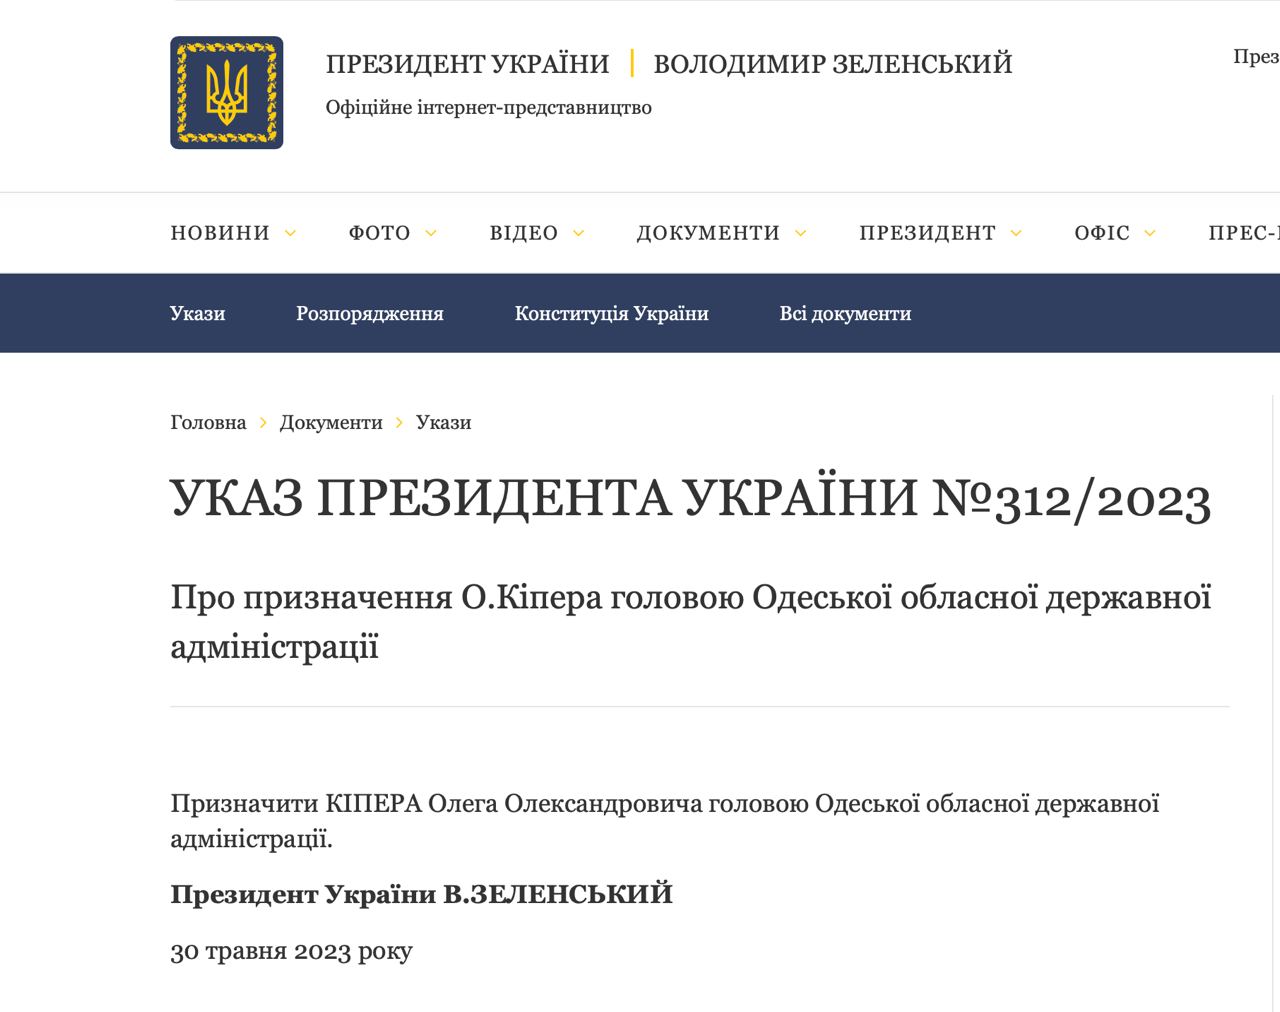 Зеленский назначил новым главой Одесской ОВА киевского прокурора Олега Кипера